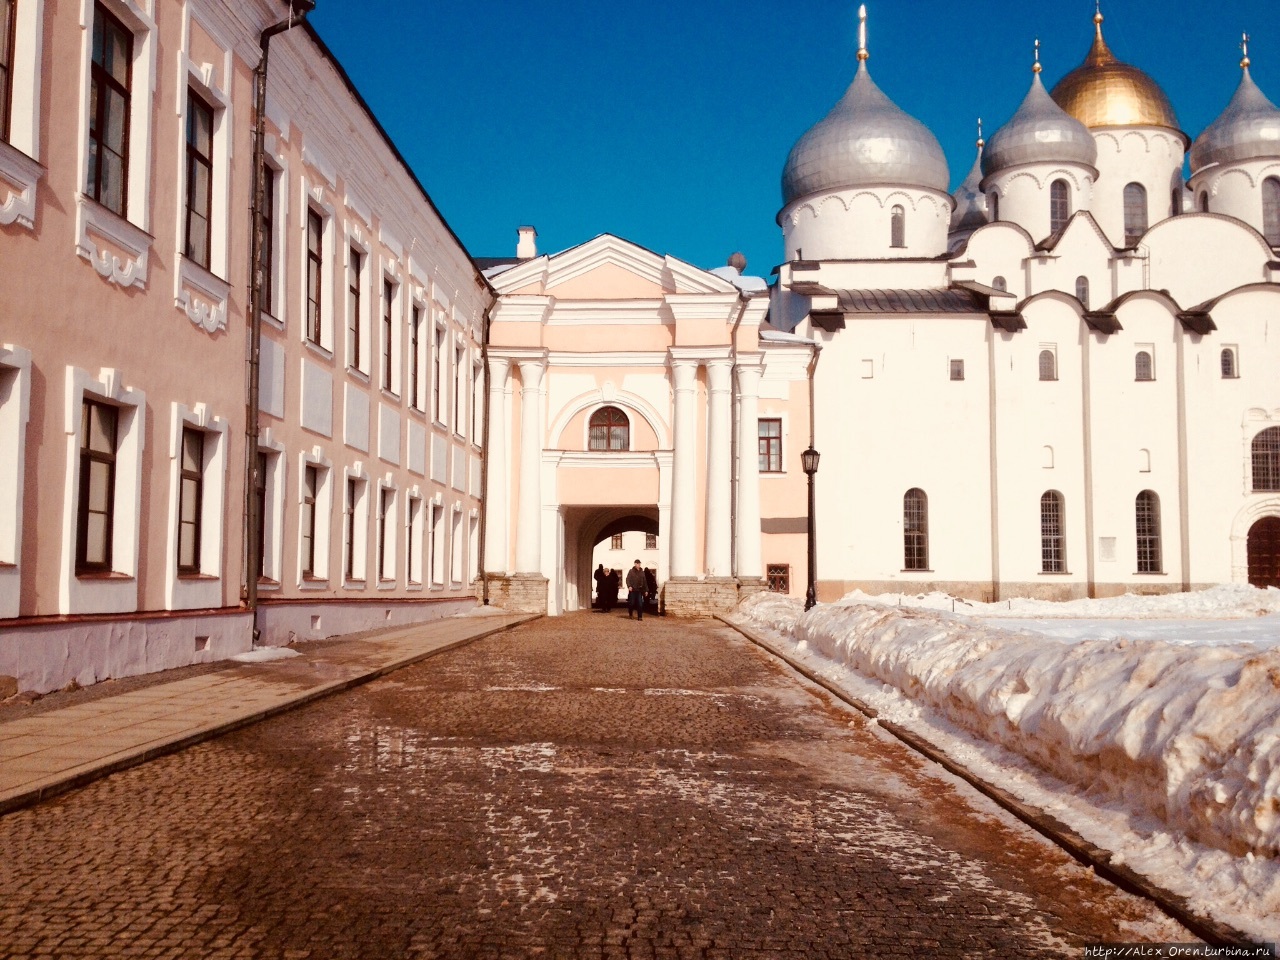 Новгородский Кремль Великий Новгород, Россия